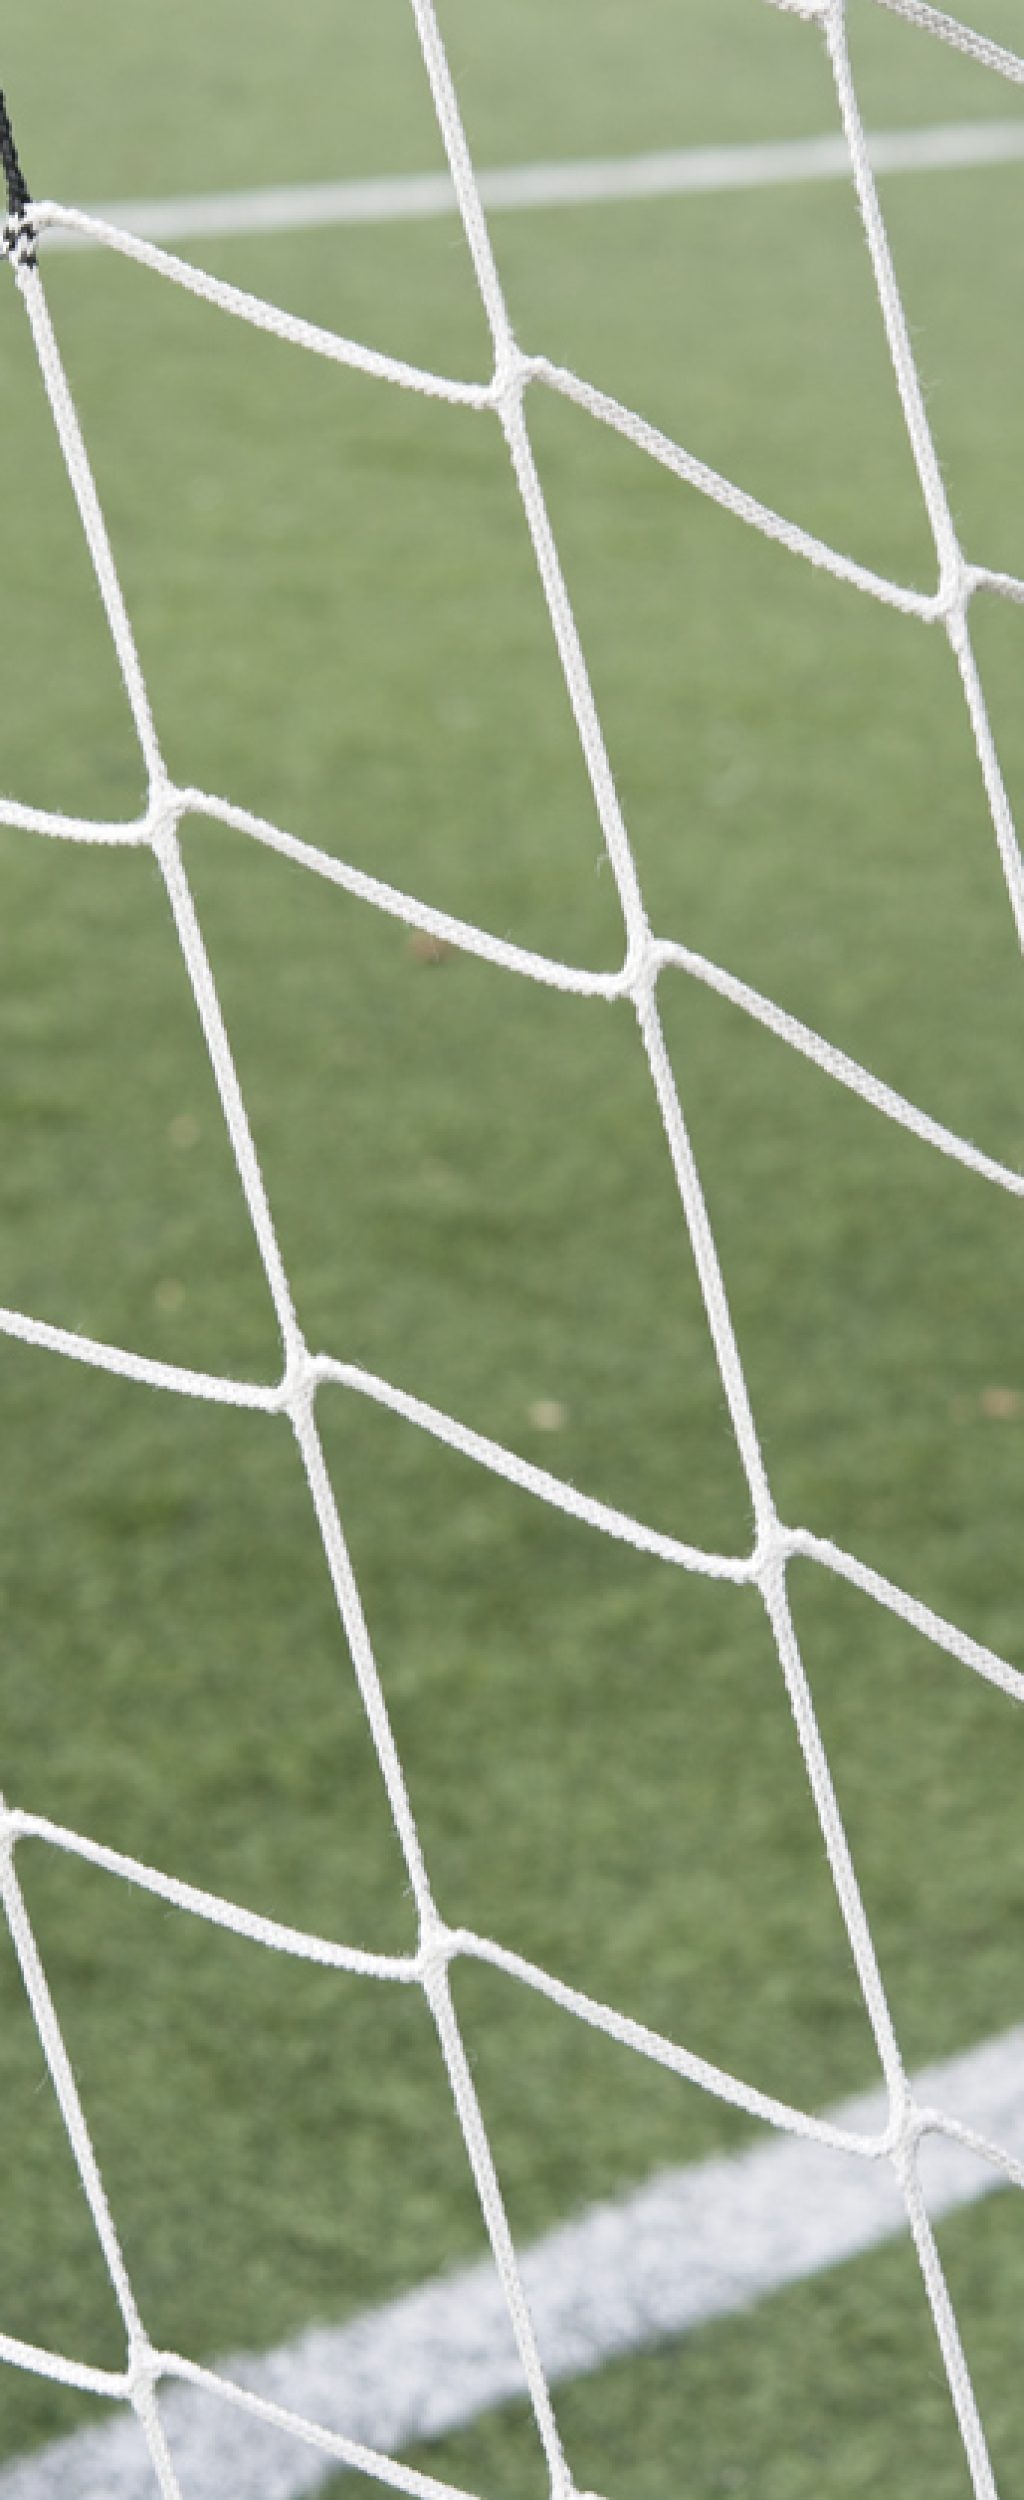 football net in detail